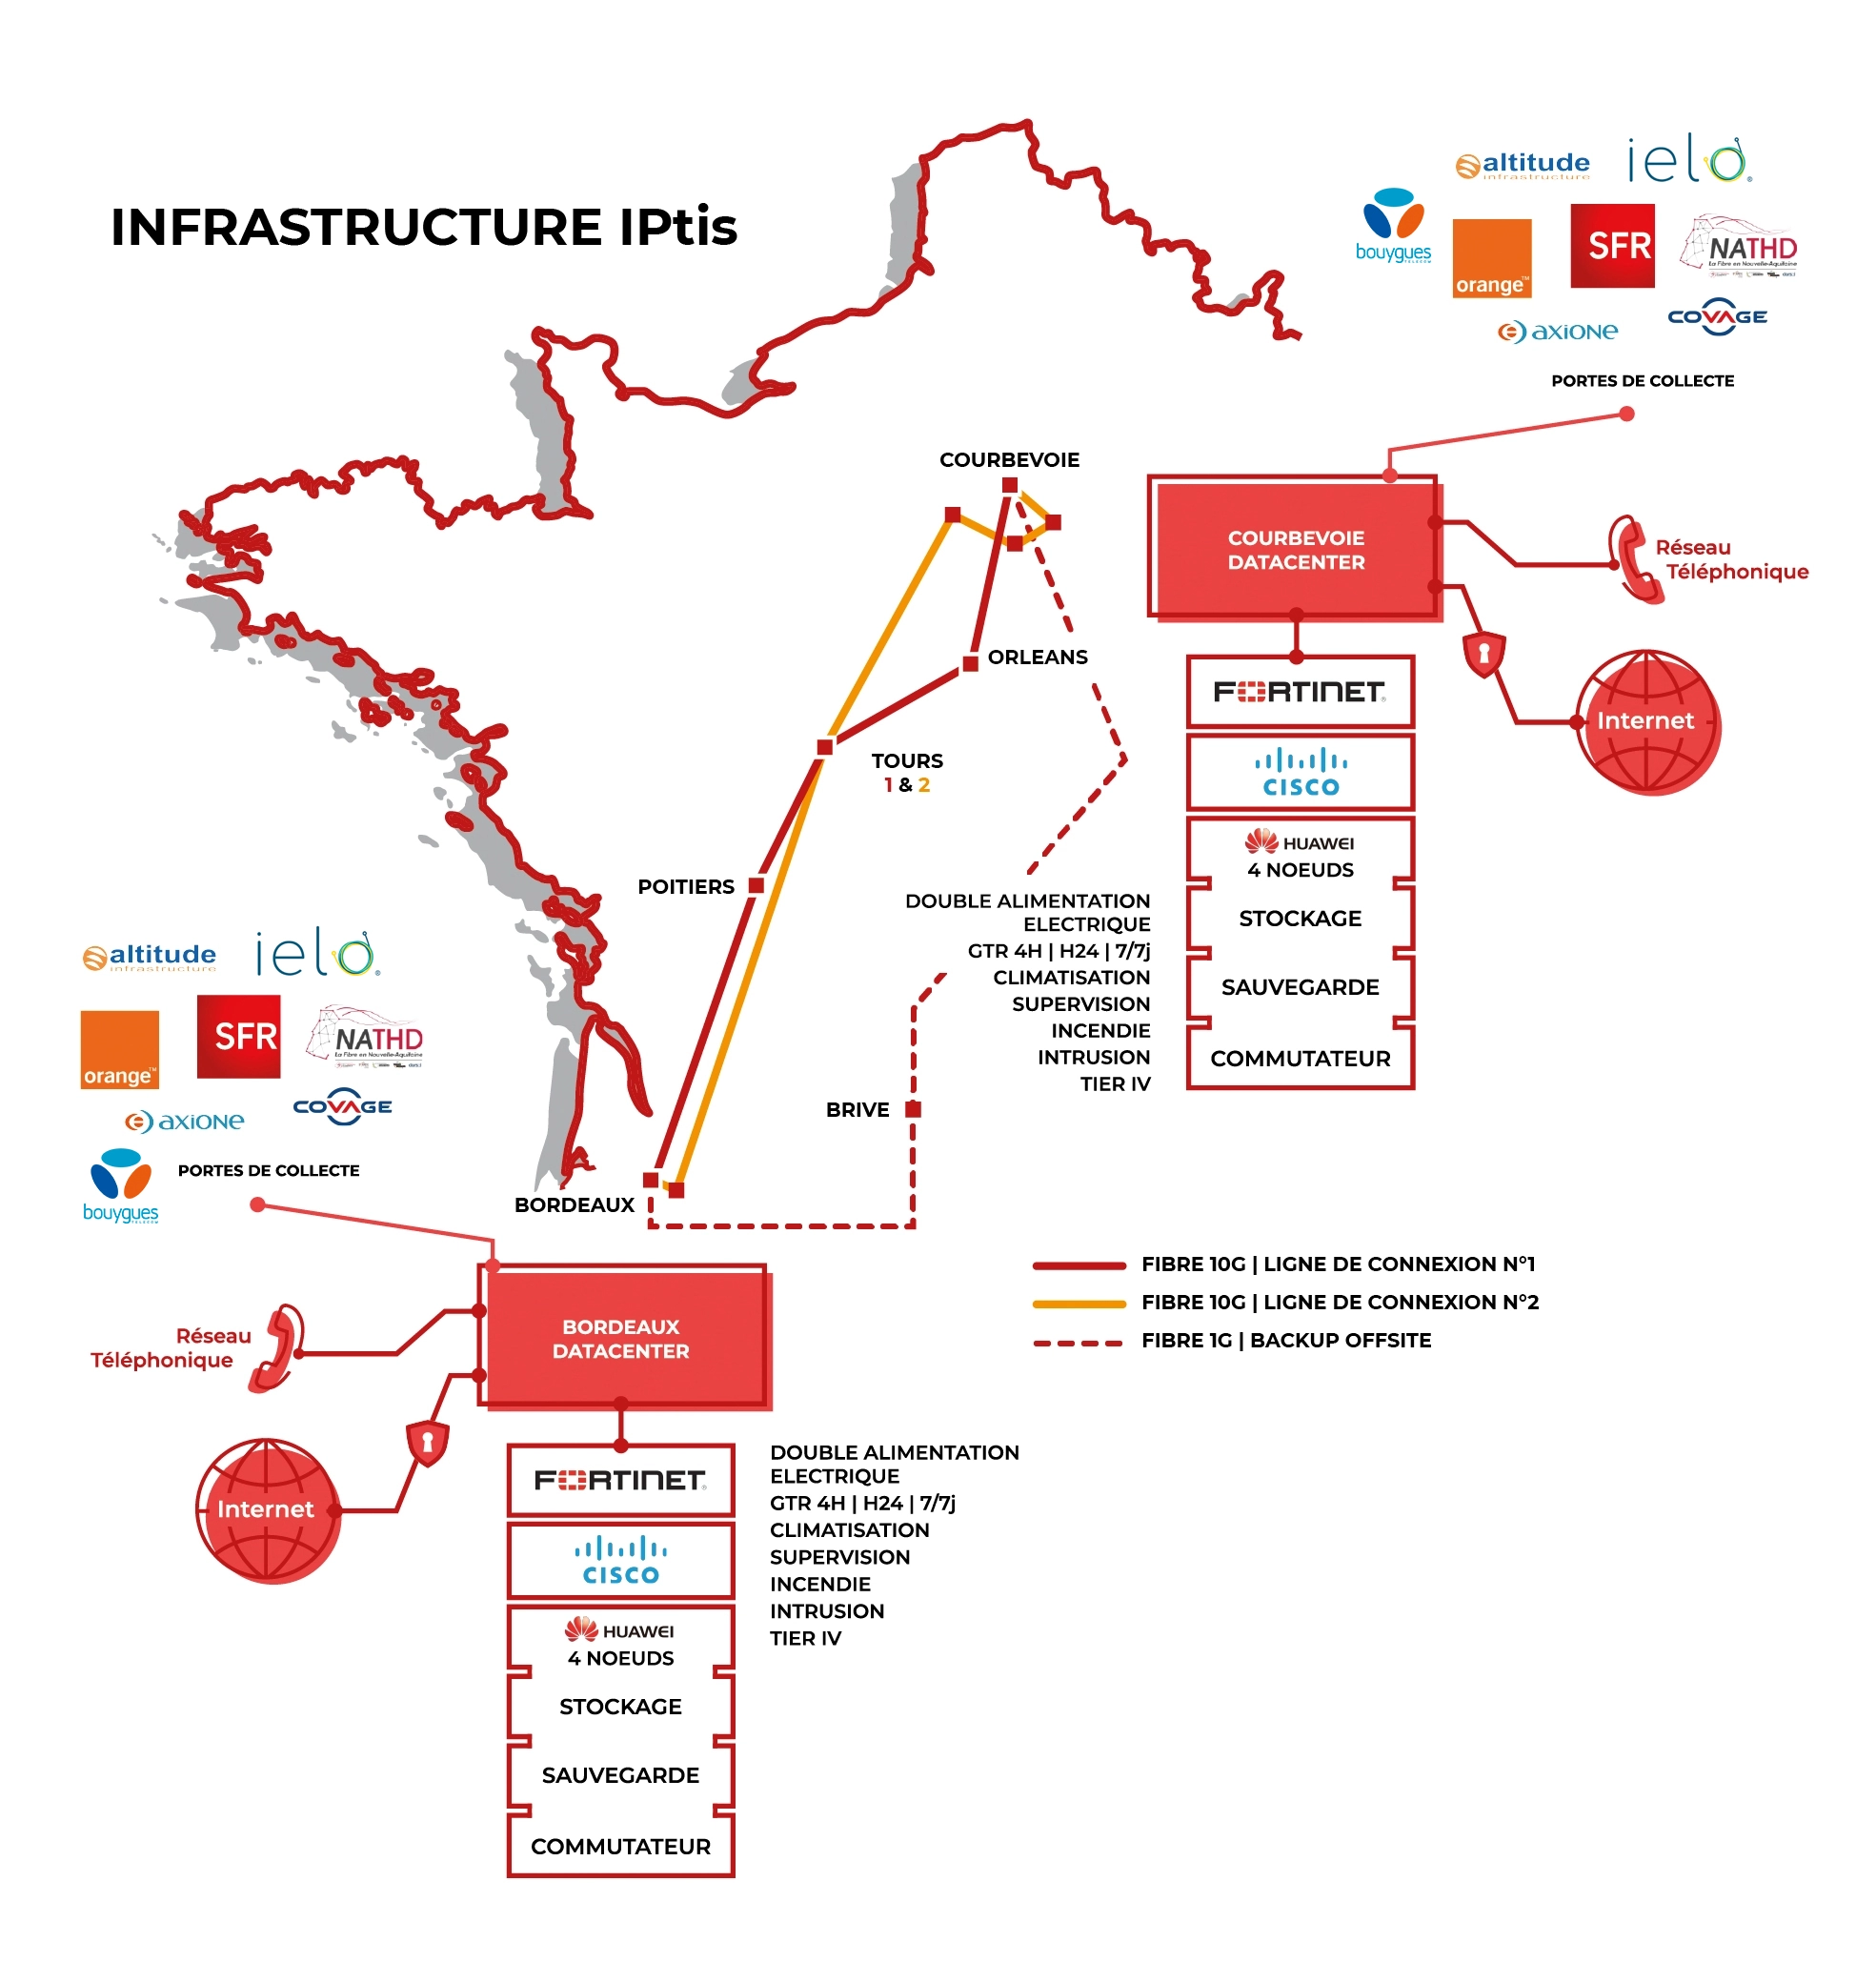 Infrastructure IPtis